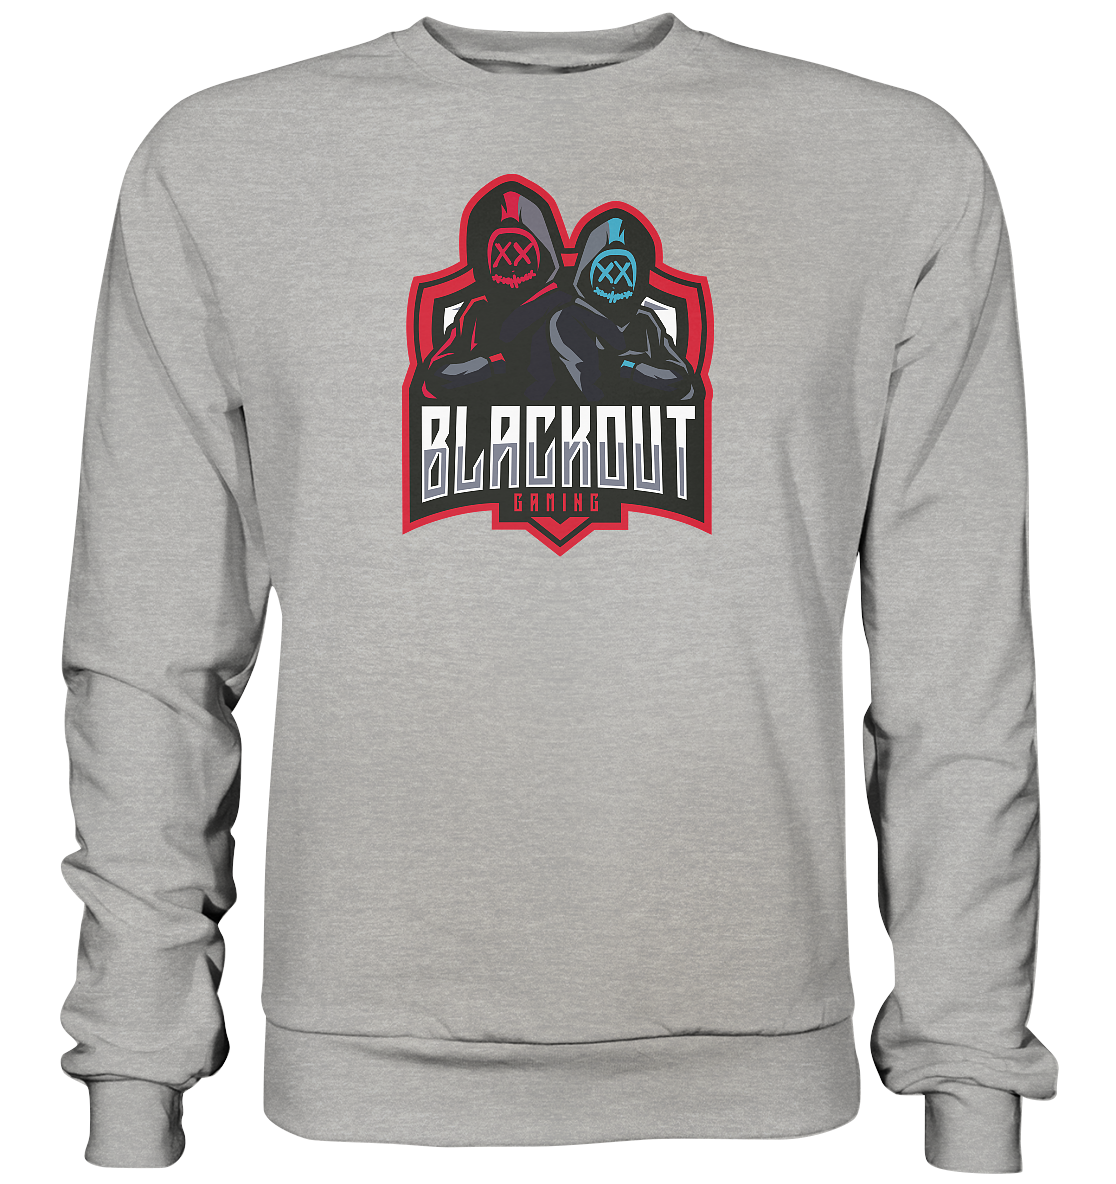 BLACKOUT GAMING - Basic Sweatshirt